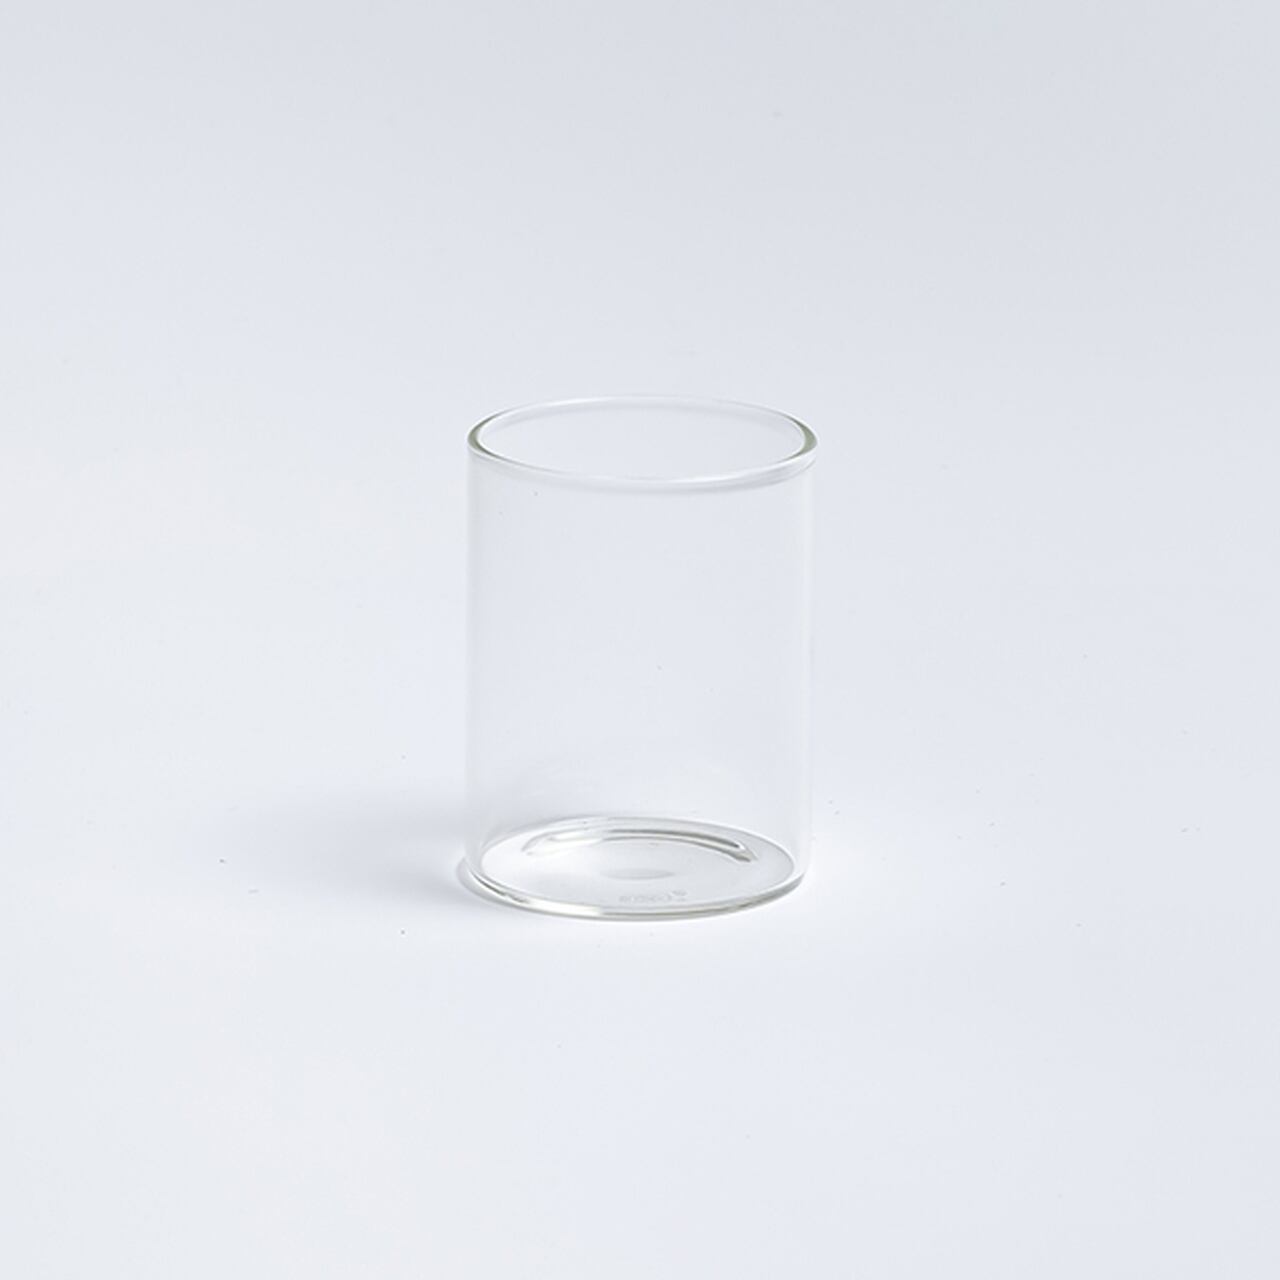 「フルーツやシトラスウォーター、白湯で始める朝習慣」 スッキリフォルムの 耐熱グラス タンブラー SS 約145ml